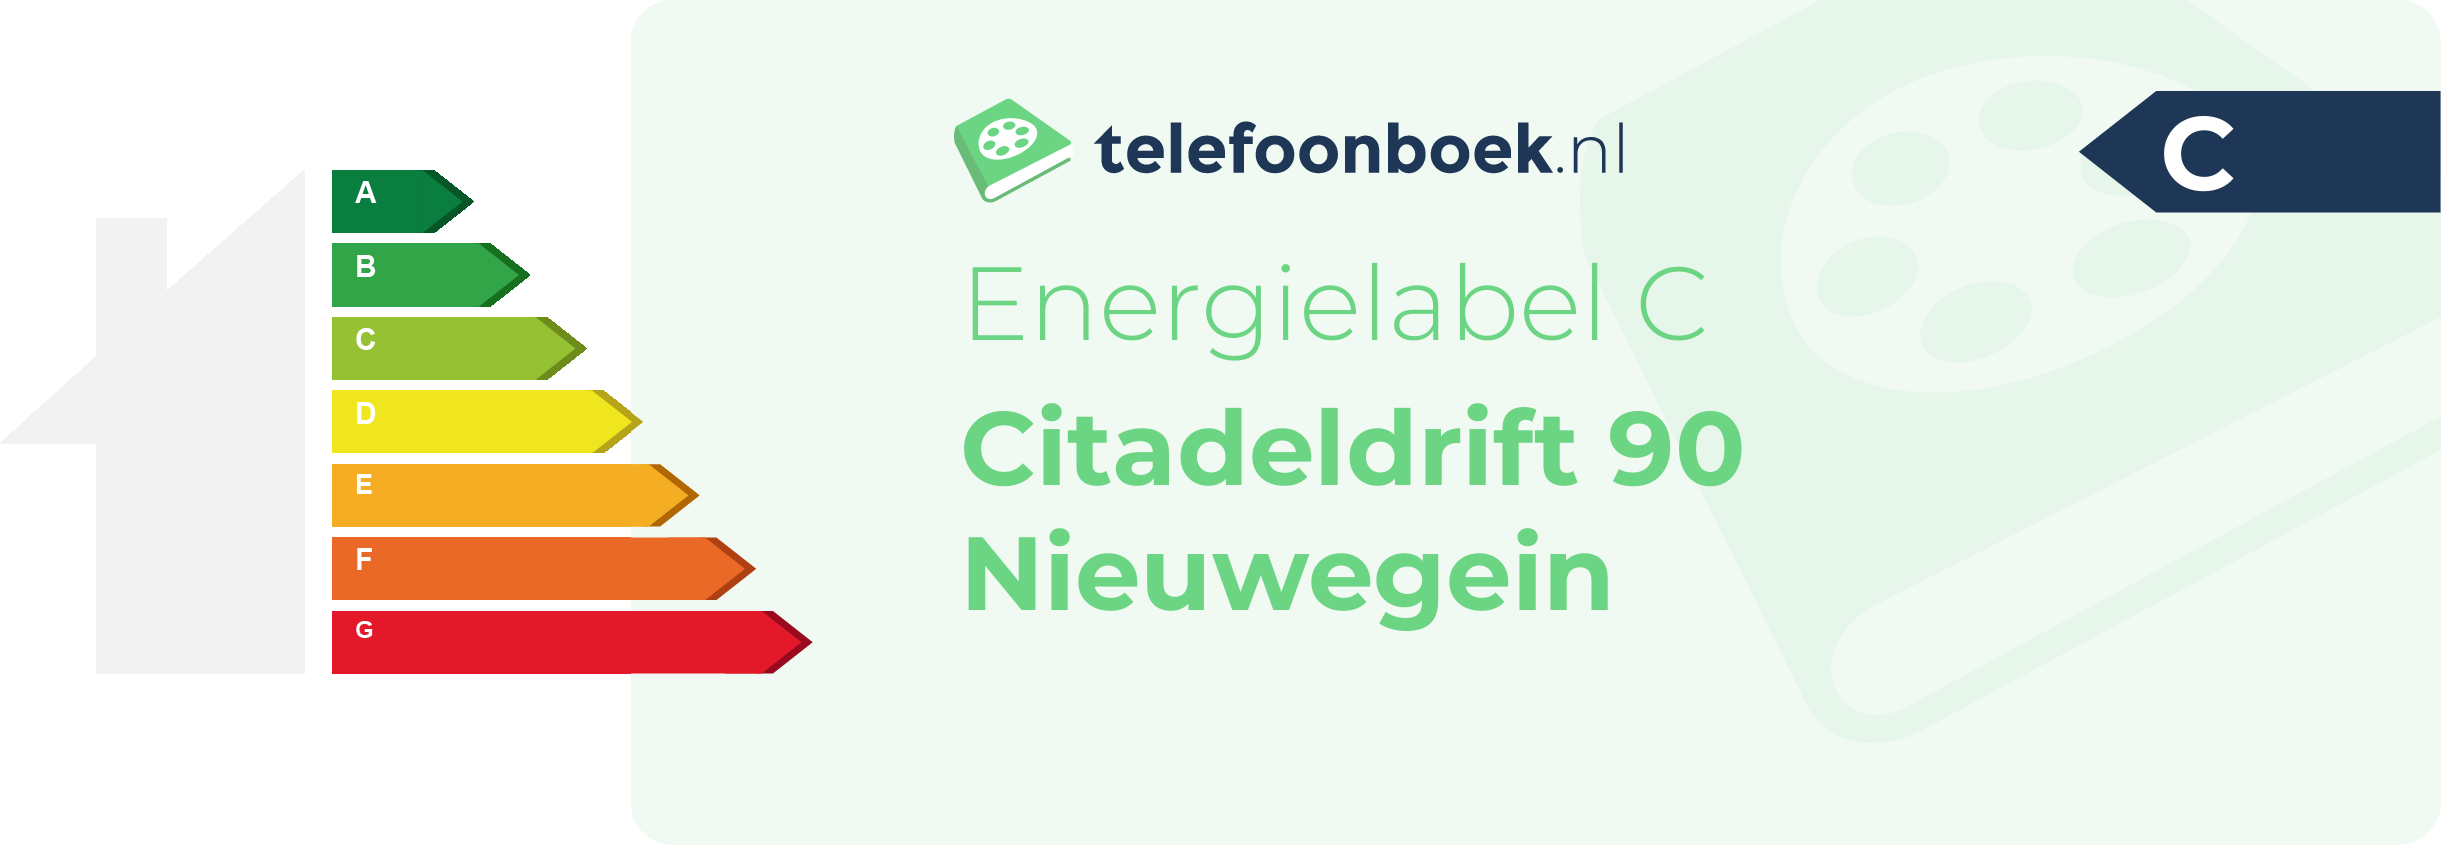 Energielabel Citadeldrift 90 Nieuwegein